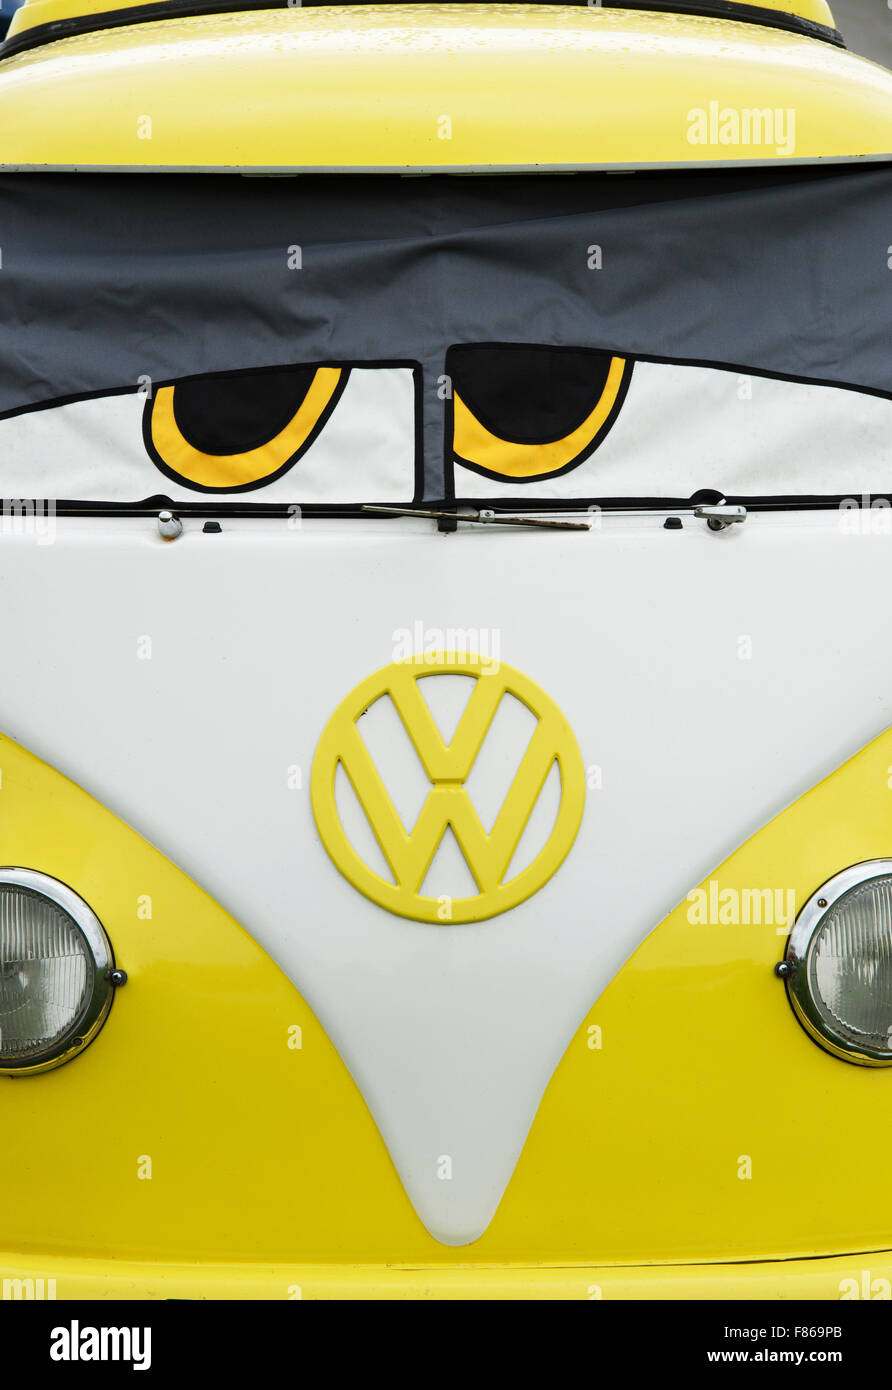 VW Wohnmobile mit Augen Windschutzscheibe Abdeckung gelb. UK  Stockfotografie - Alamy